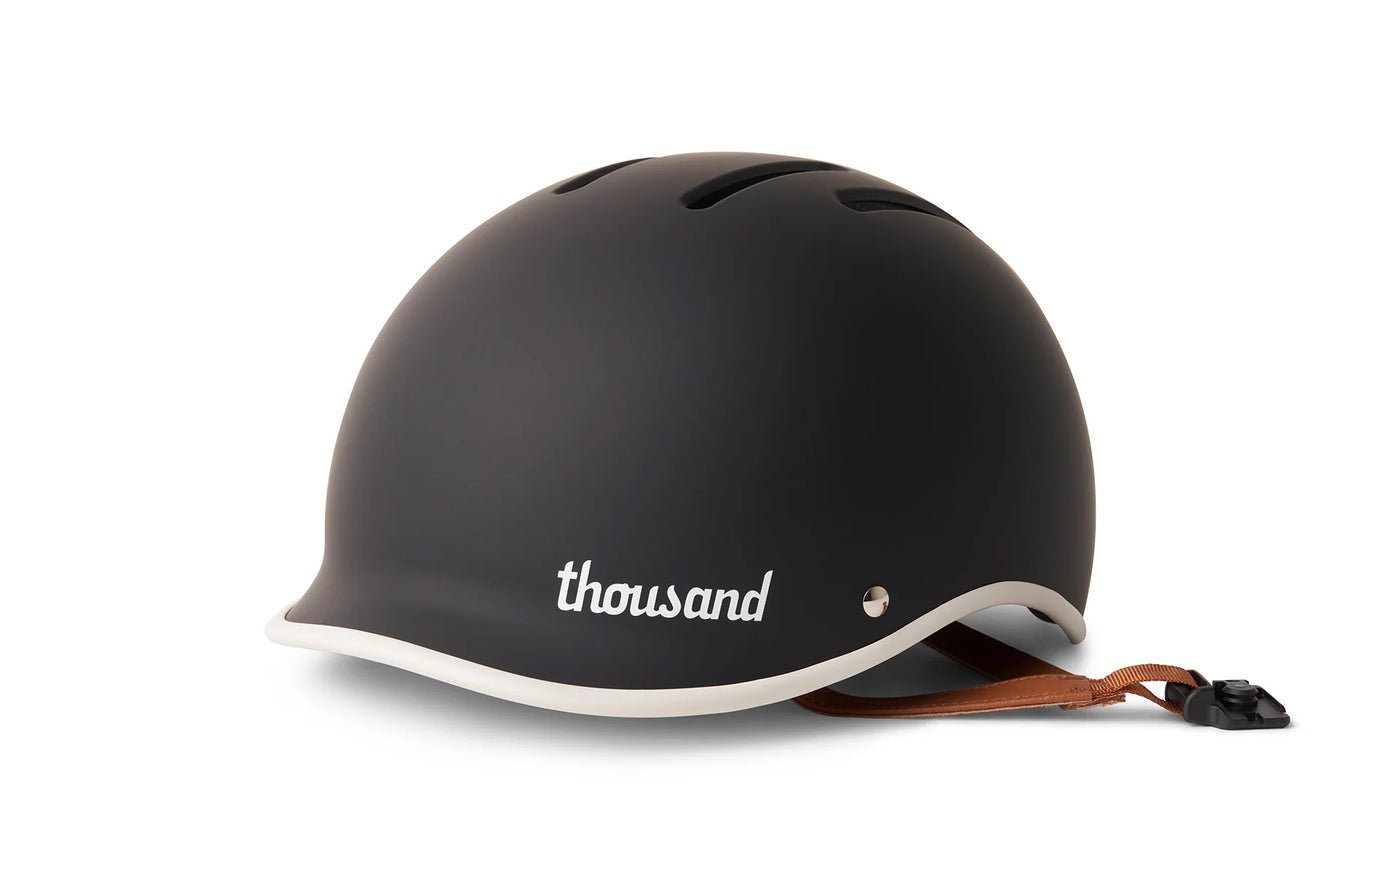 Thousand Heritage Helmet 2.0